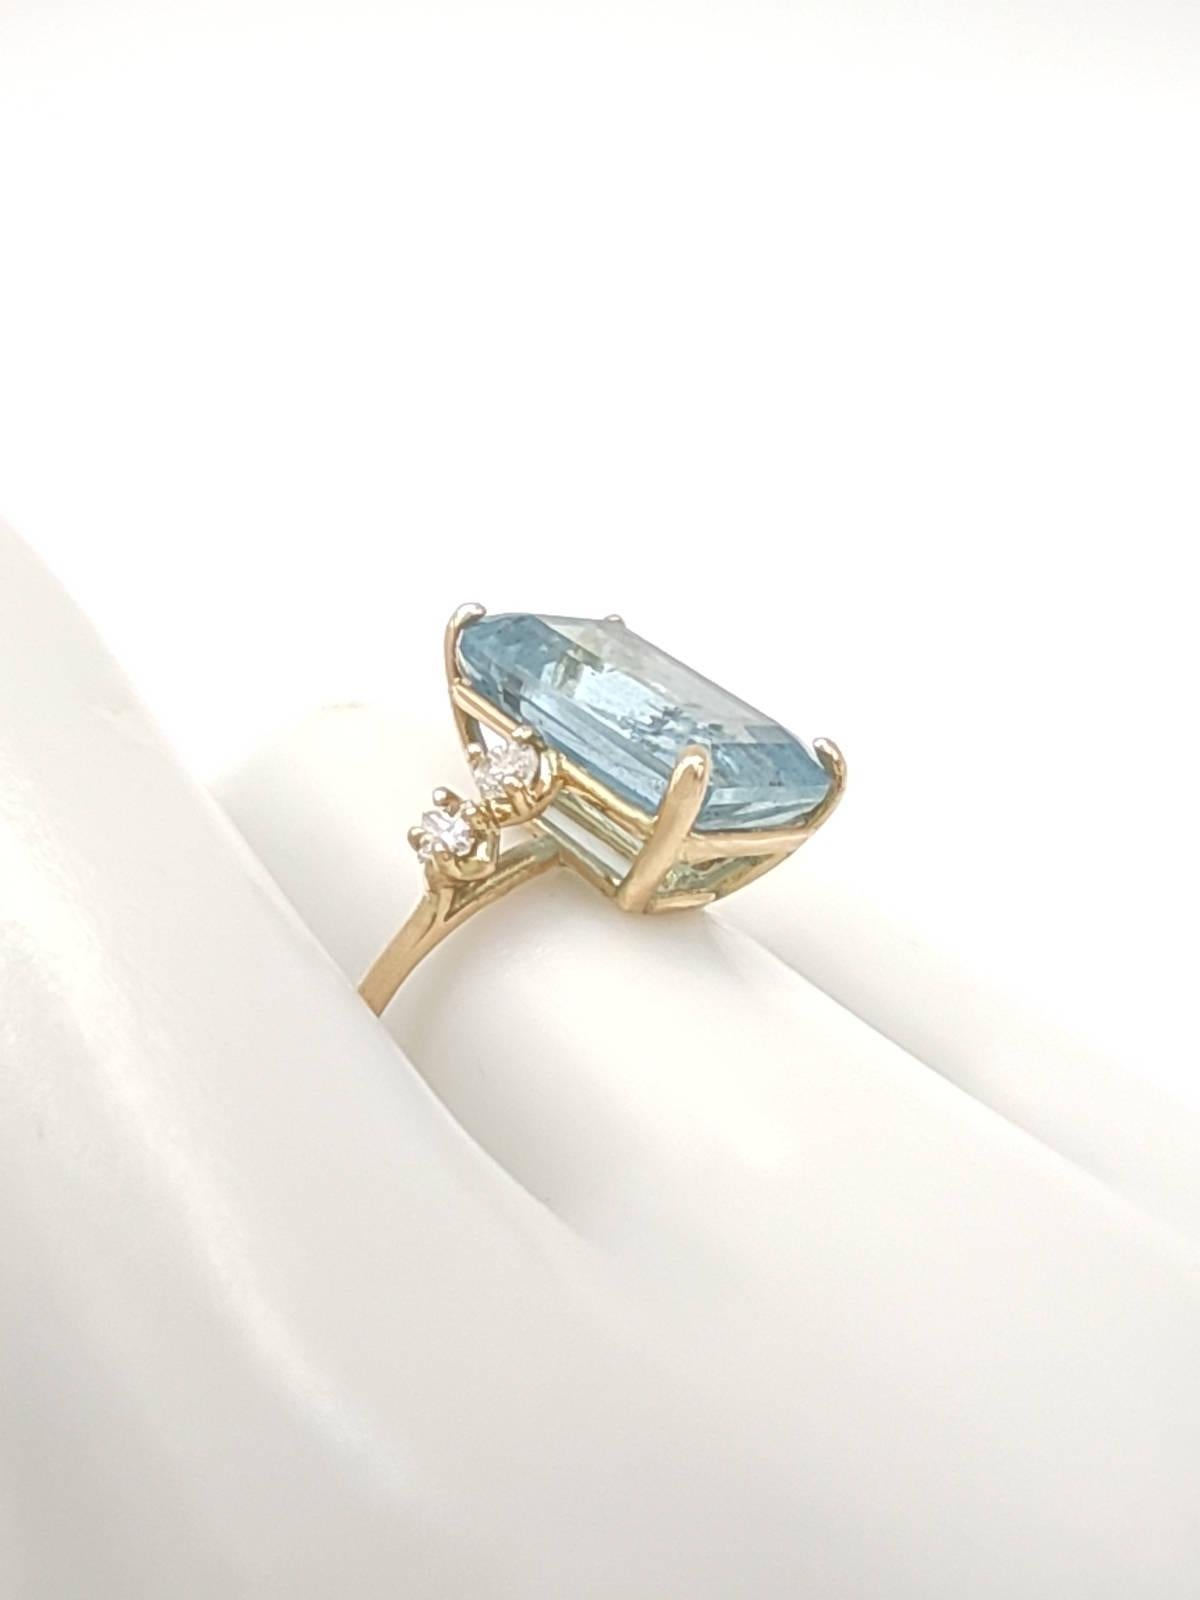 Artist Gemstone ring 14k Gold Aquamarine Ring Diamonds  Women Bridal  Rings Certified